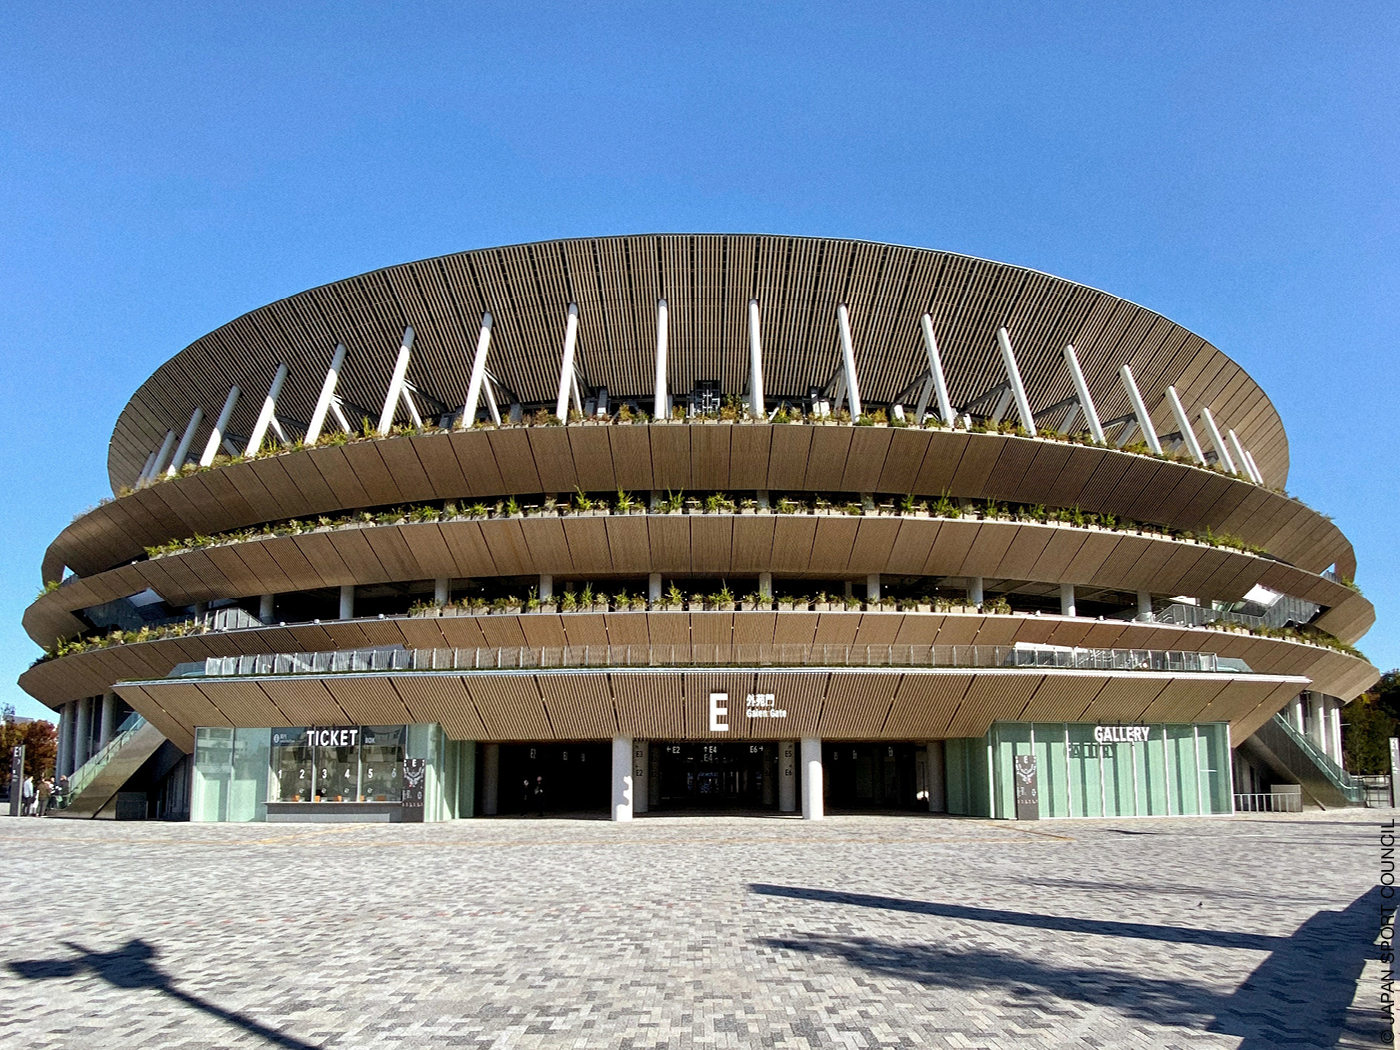 Das neue Olympia Stadion von Tokyo mit Holzkonstruktion